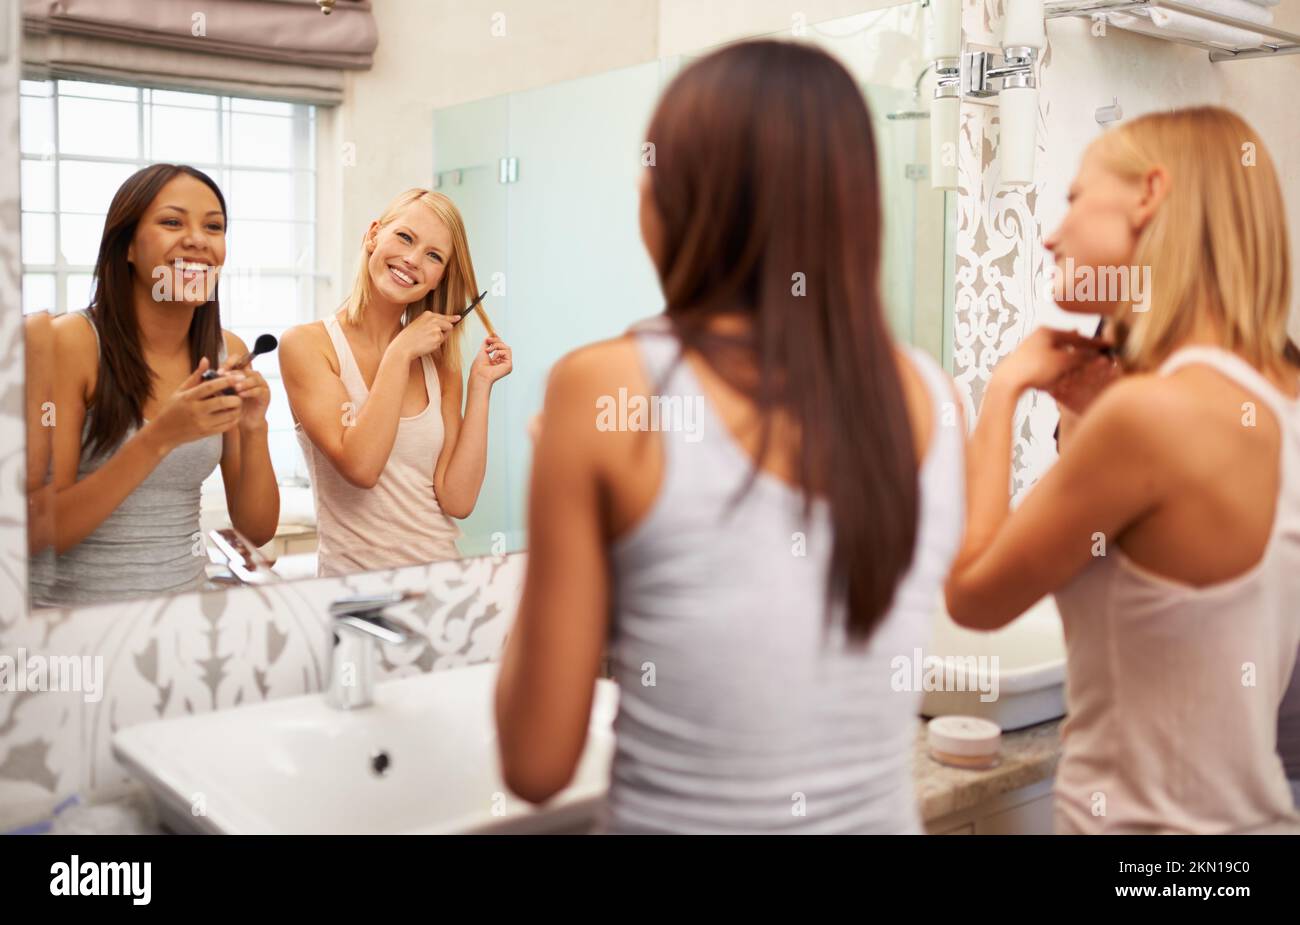 Etwas, das wir beide lieben... zwei junge Frauen, die Make-up auftragen und ihre Haare vor dem Spiegel stylen. Stockfoto